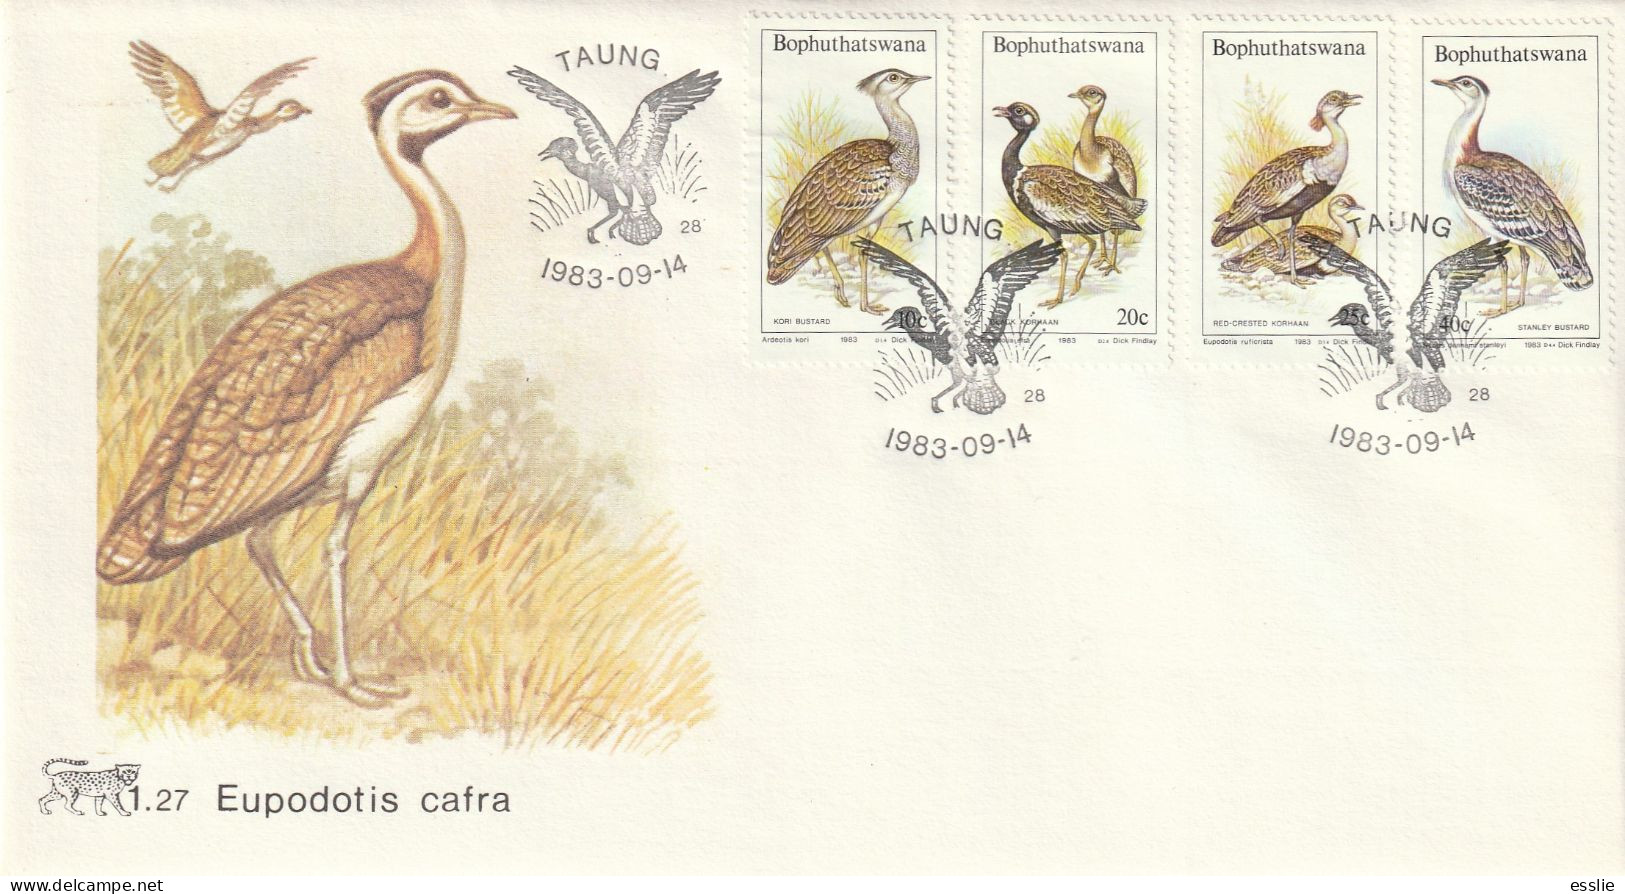 Bophuthatswana - 1983 - Birds Vogel Of The Veld Bustards - First Day Cover - Small - Kraanvogels En Kraanvogelachtigen